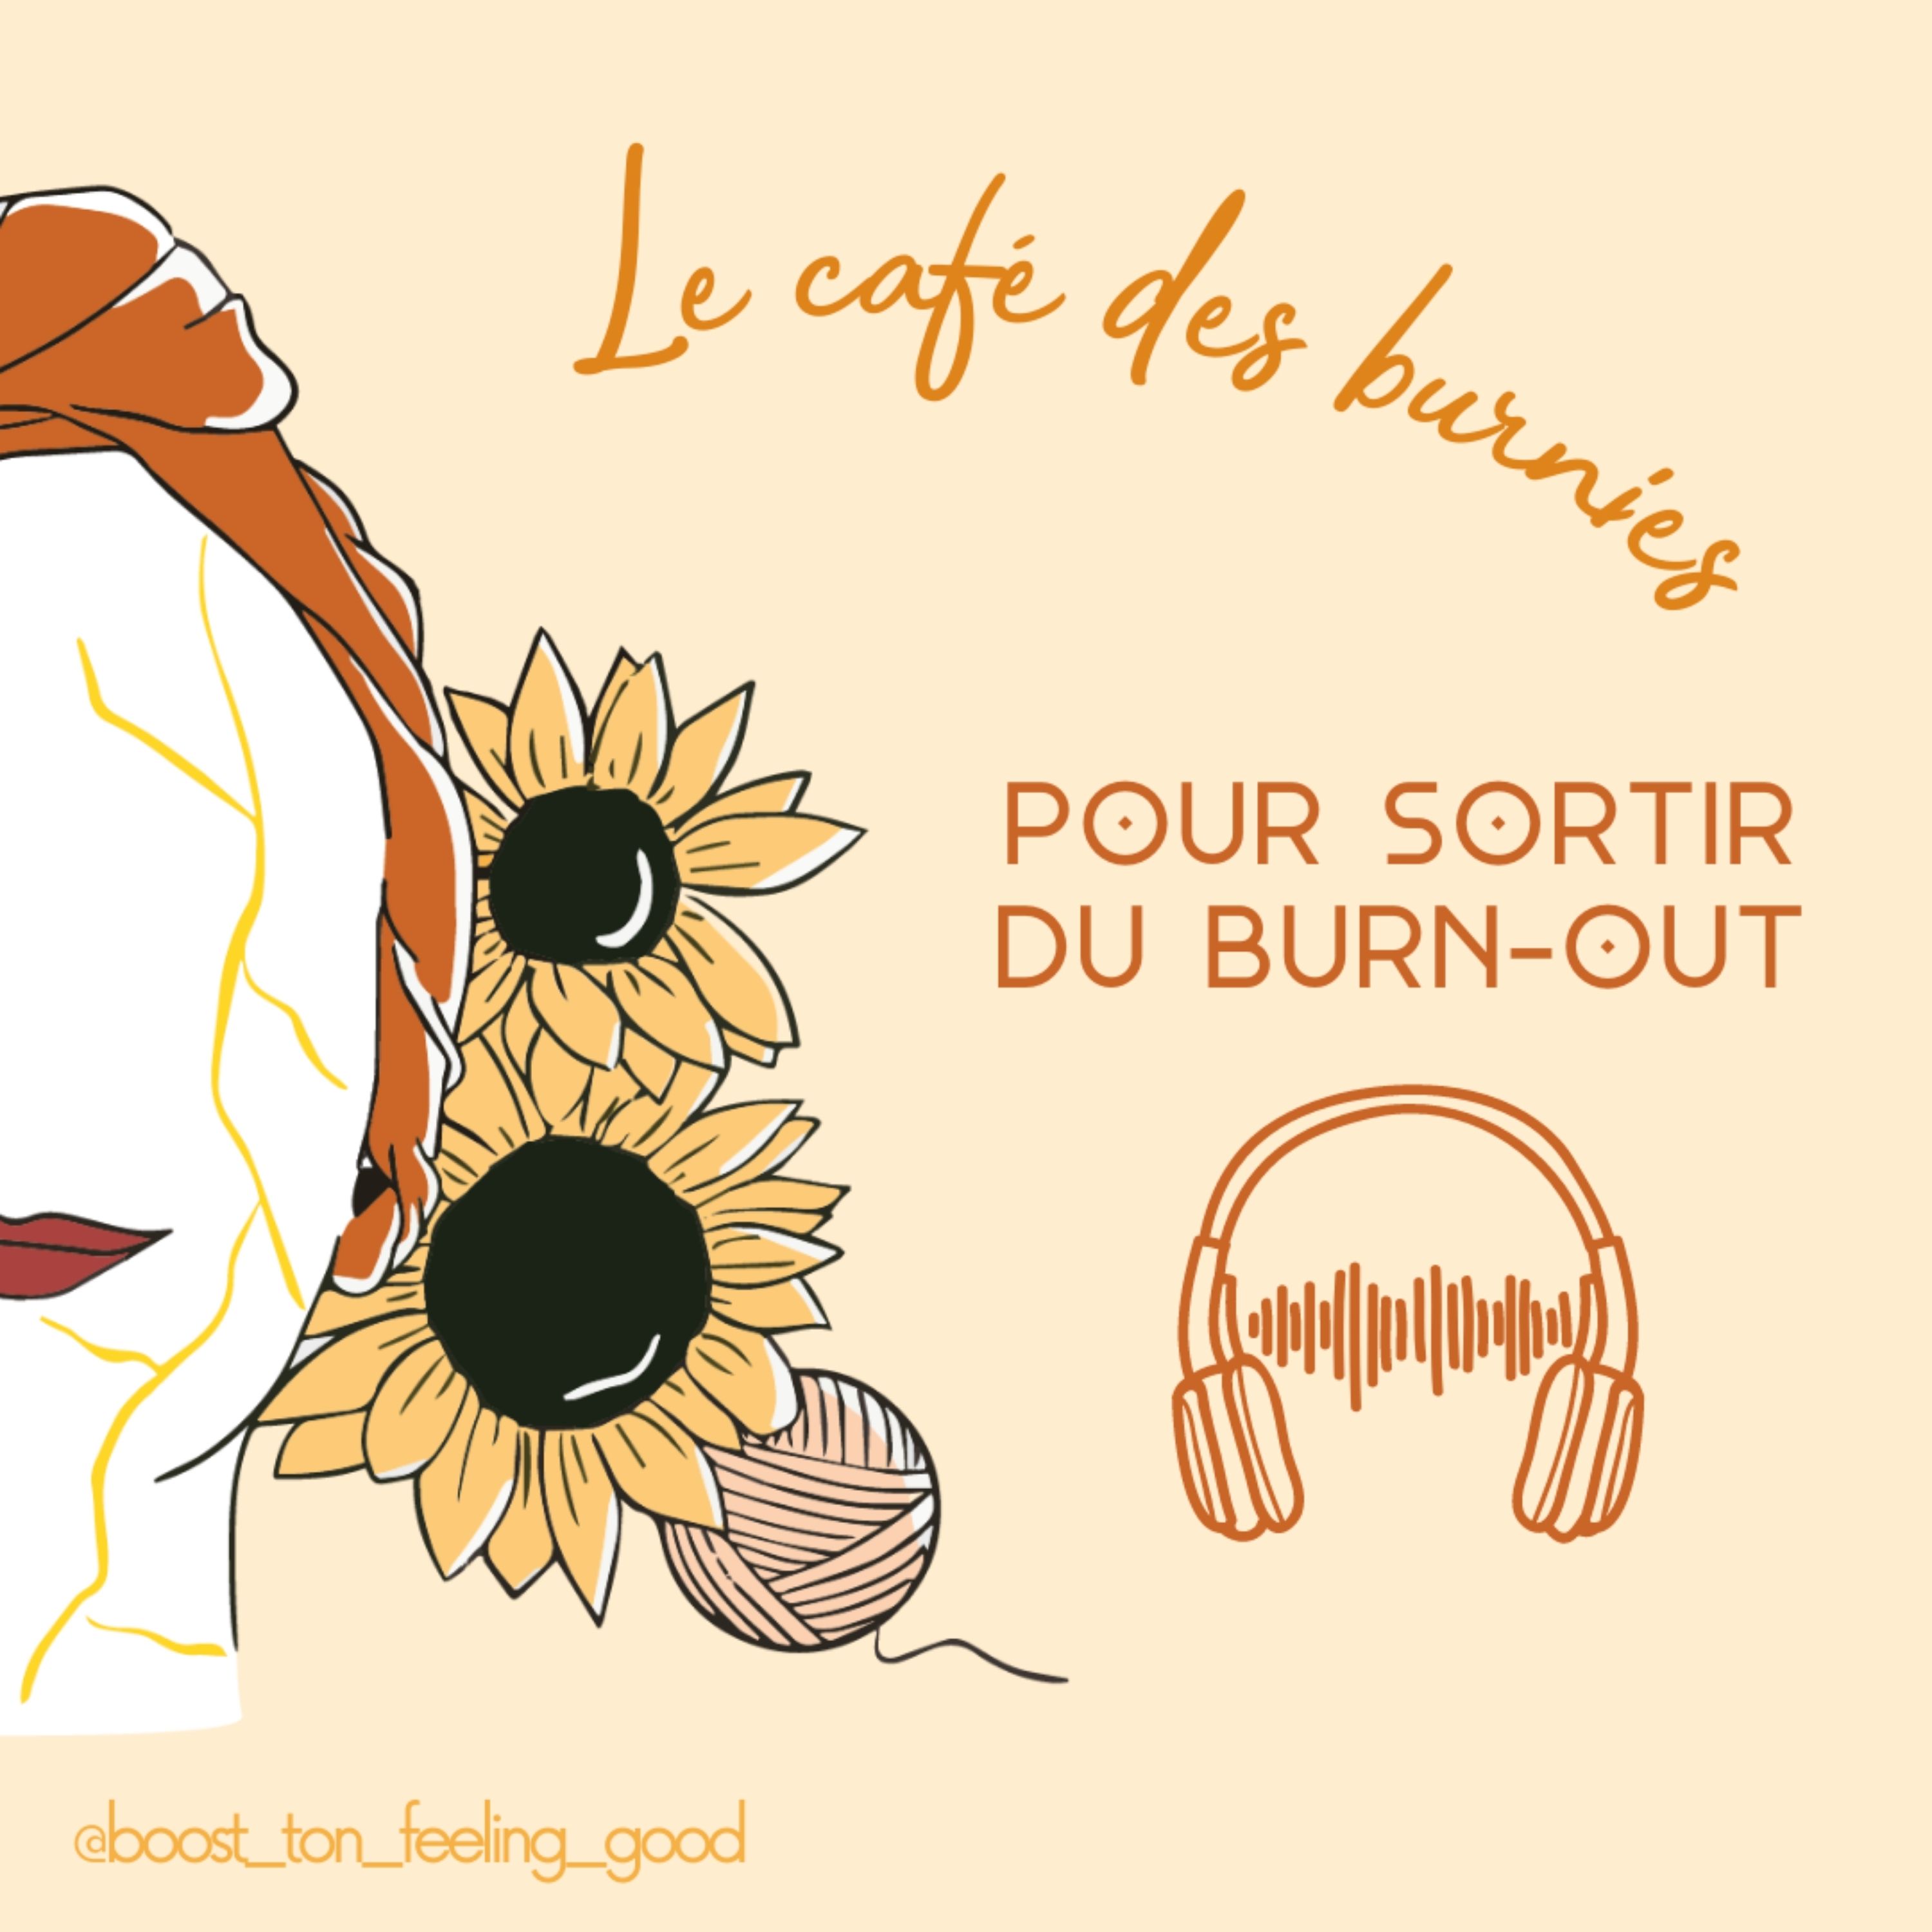 Le café des burnies – Pour sortir du burn-out